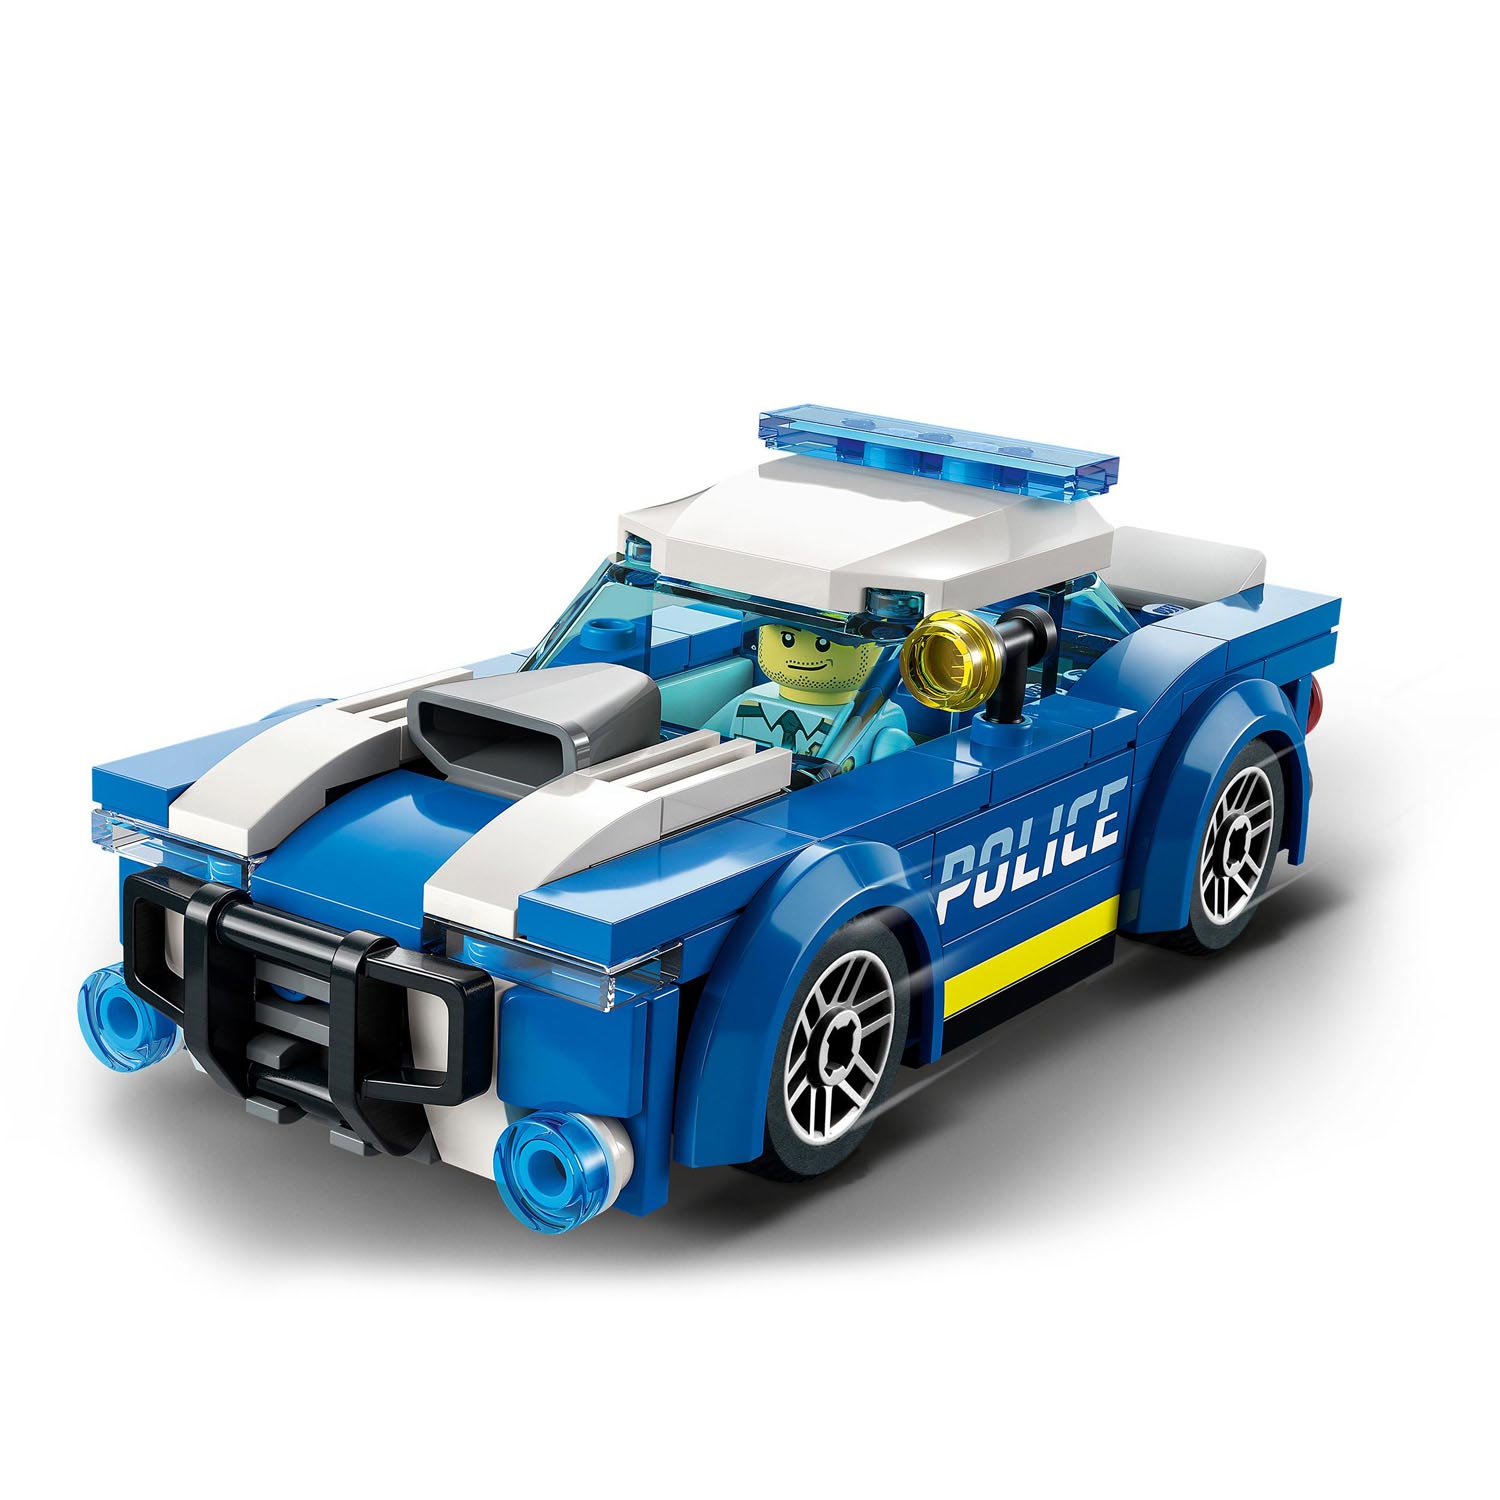 LEGO City  Politiewagen